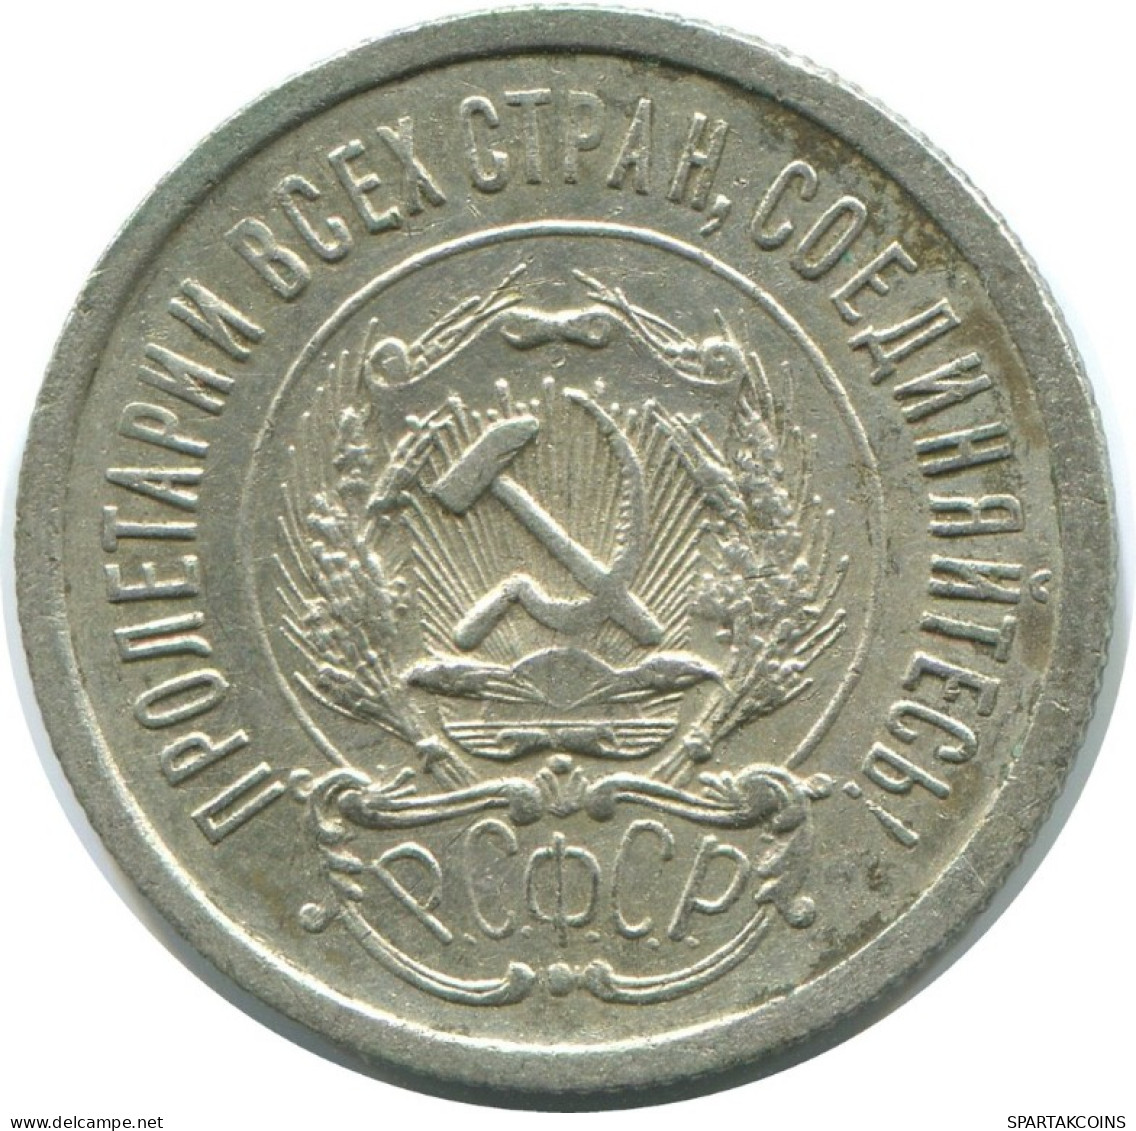 20 KOPEKS 1923 RUSSLAND RUSSIA RSFSR SILBER Münze HIGH GRADE #AF614.D.A - Rusia